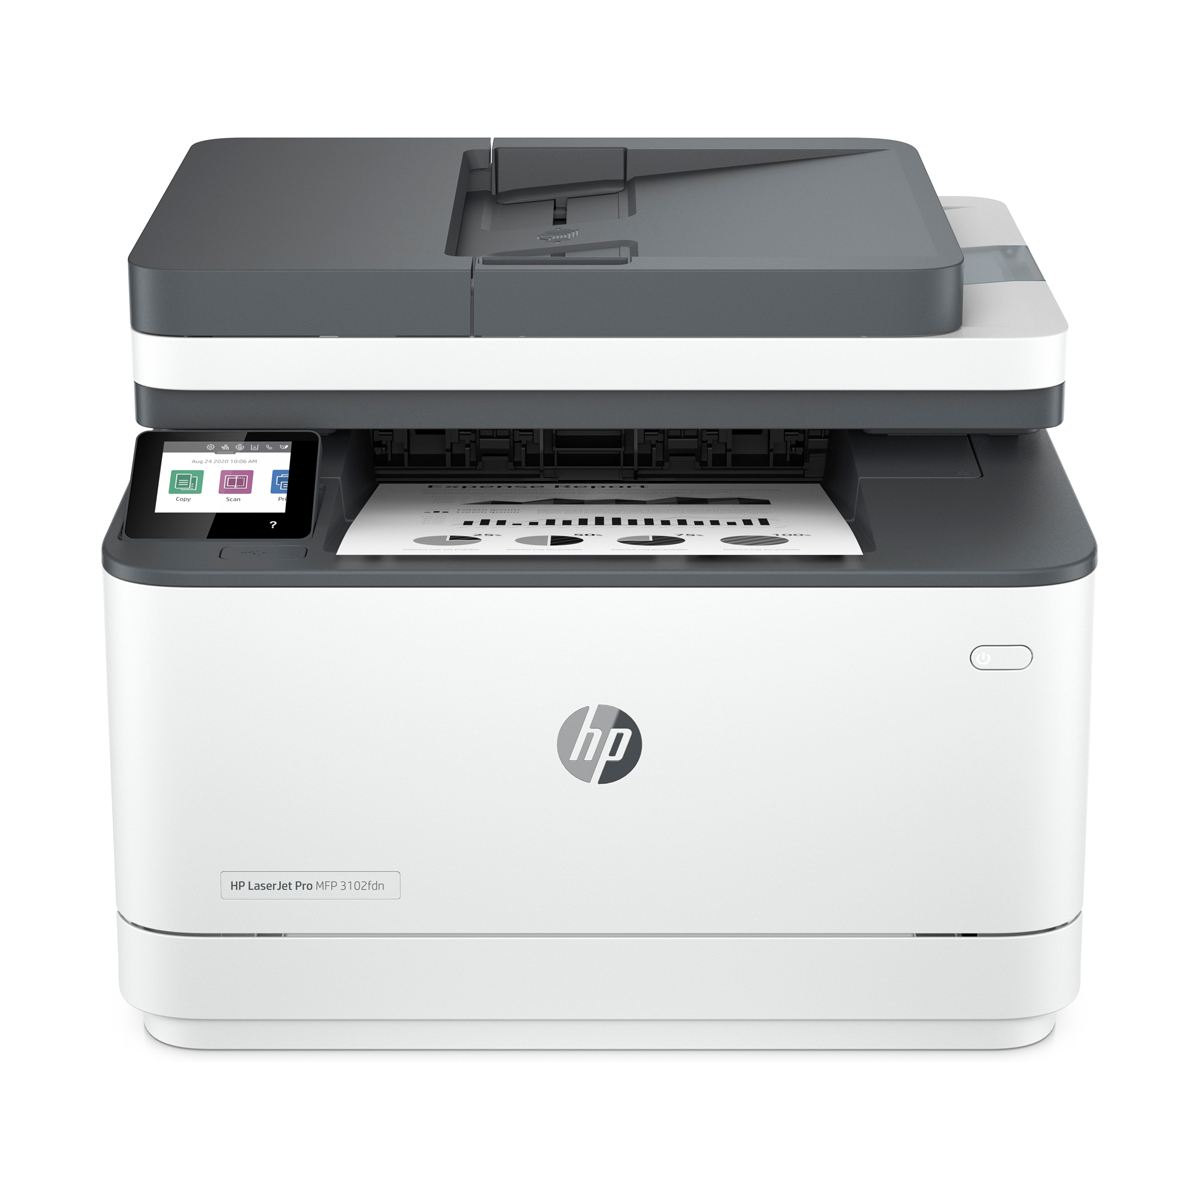 HP LaserJet Pro MFP 3102fdn - 4in1 Multifunktionsdrucker B-Ware Schwarz-Weiß, Drucken, Kopieren, Scannen, Faxen, Instant Ink von HP